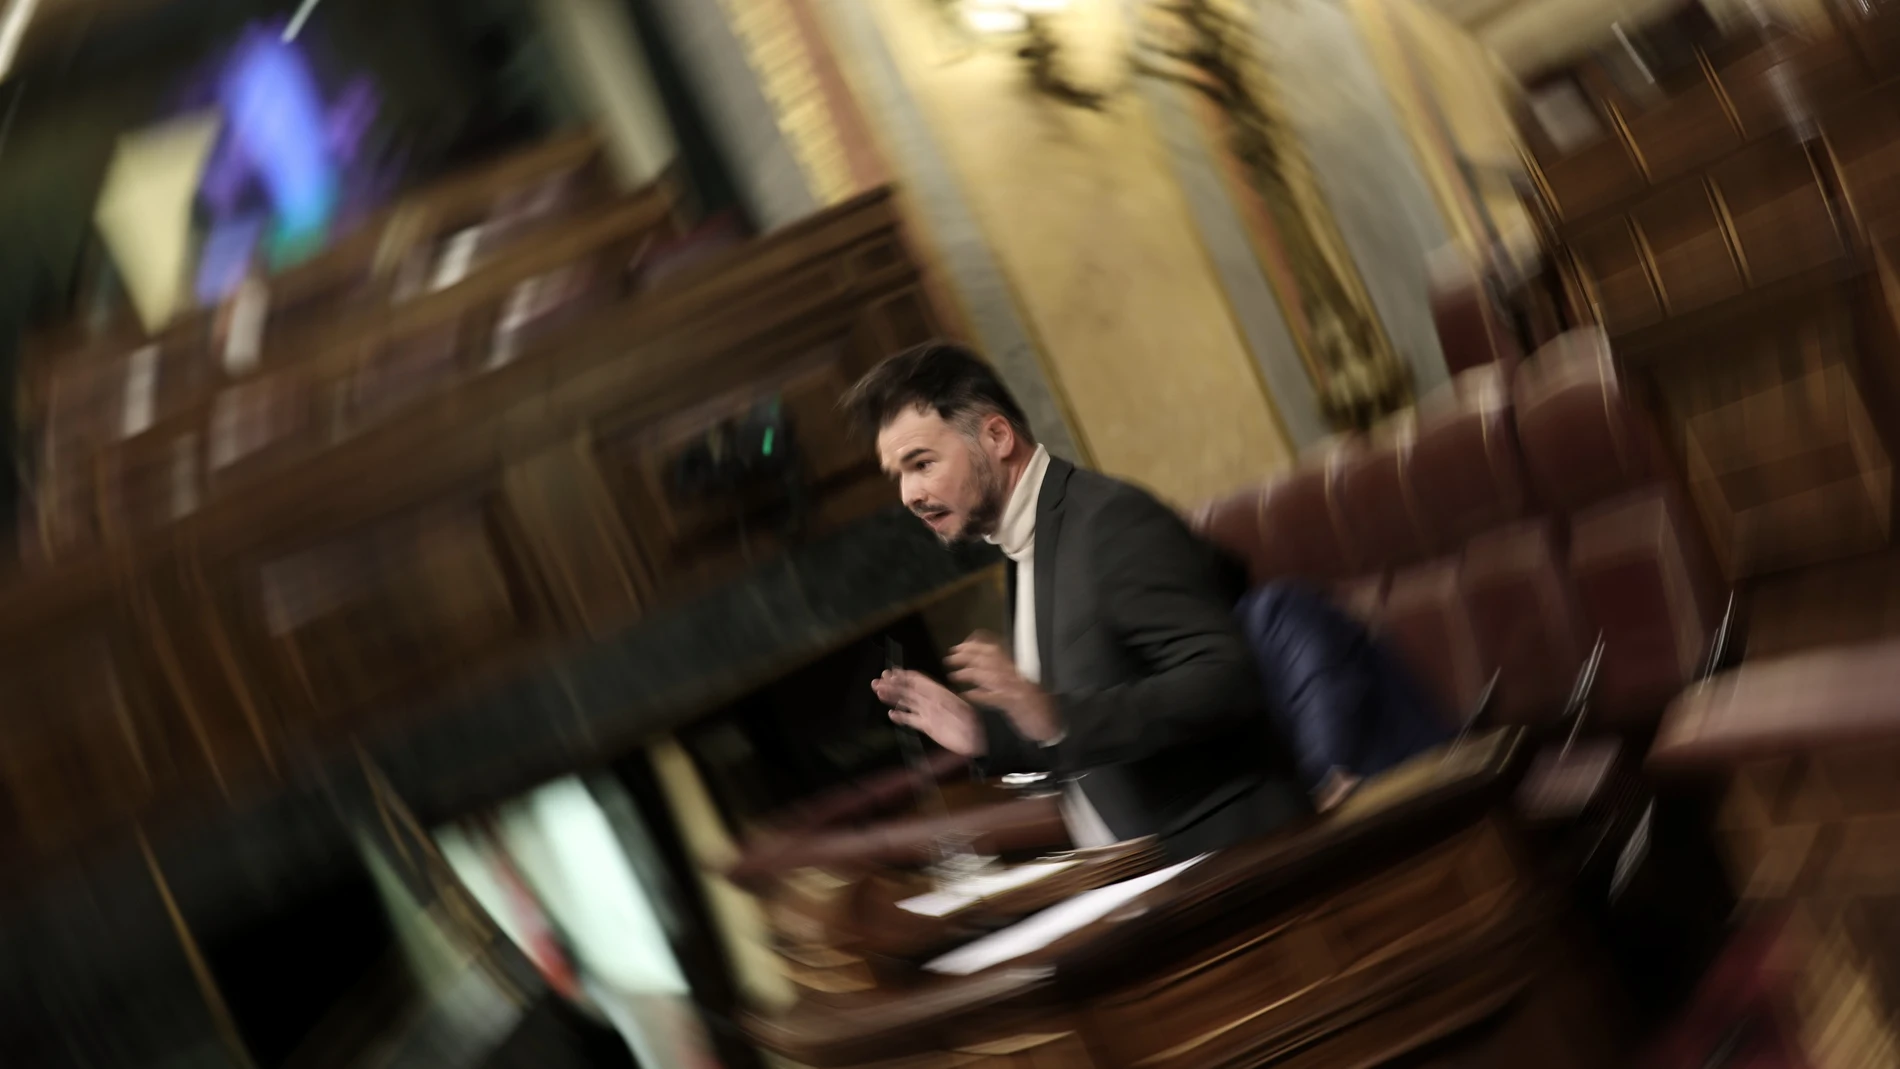 El portavoz parlamentario de ERC, Gabriel Rufián, interviene en una sesión plenaria en el Congreso de los Diputados, a 10 de noviembre de 2021, en Madrid, (España).